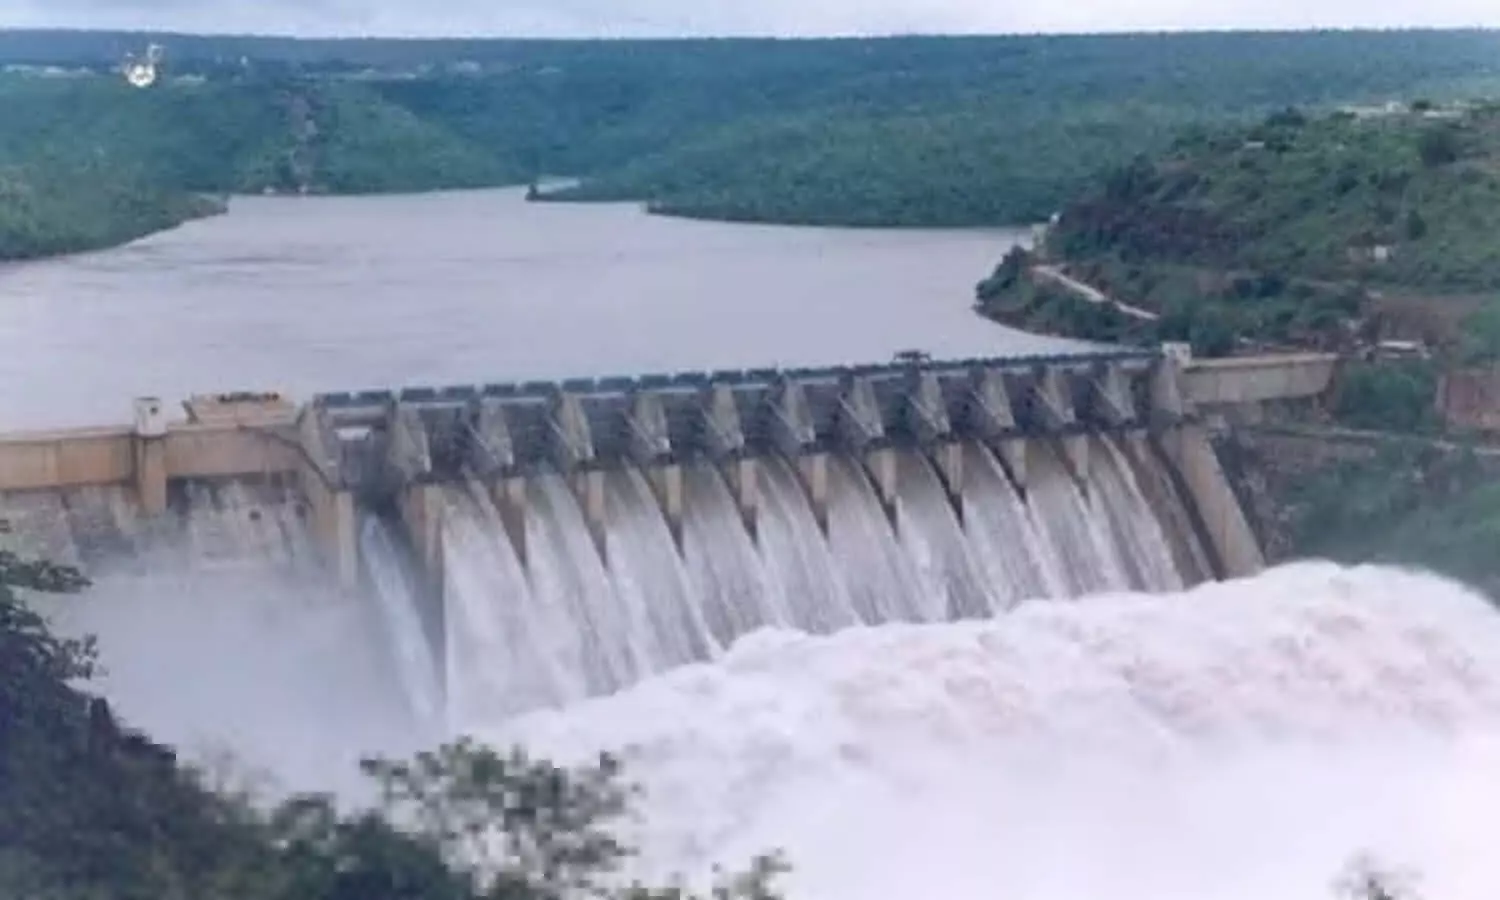 Rihand Dam: सोनभद्र का रिहंद बांध, आखिर क्यों है फेमस, जानें इसकी खासियत